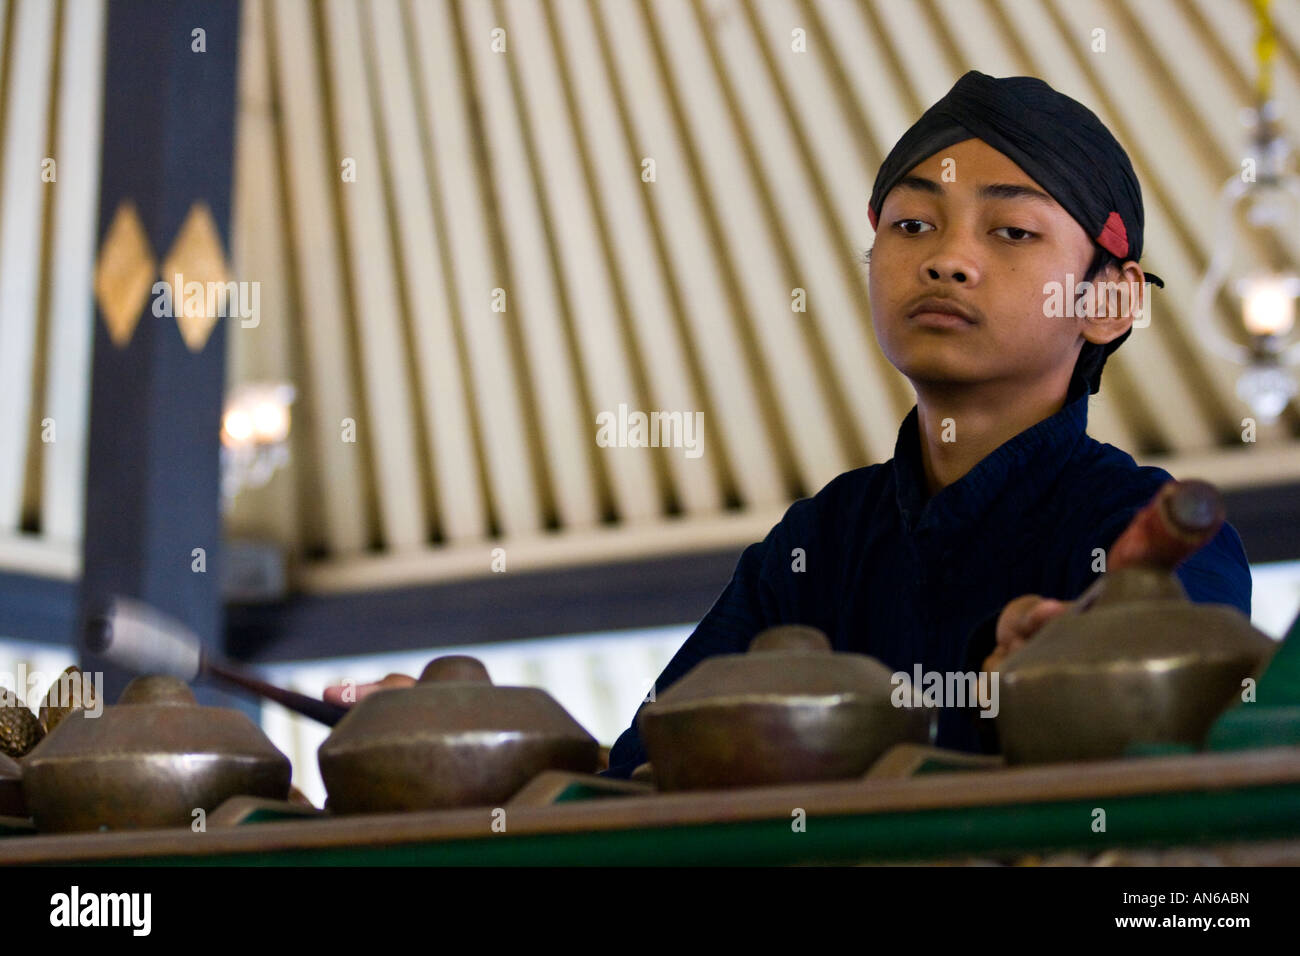 Gamelan tradicional Player funcione en el Palacio Real de Yogyakarta, Indonesia Foto de stock